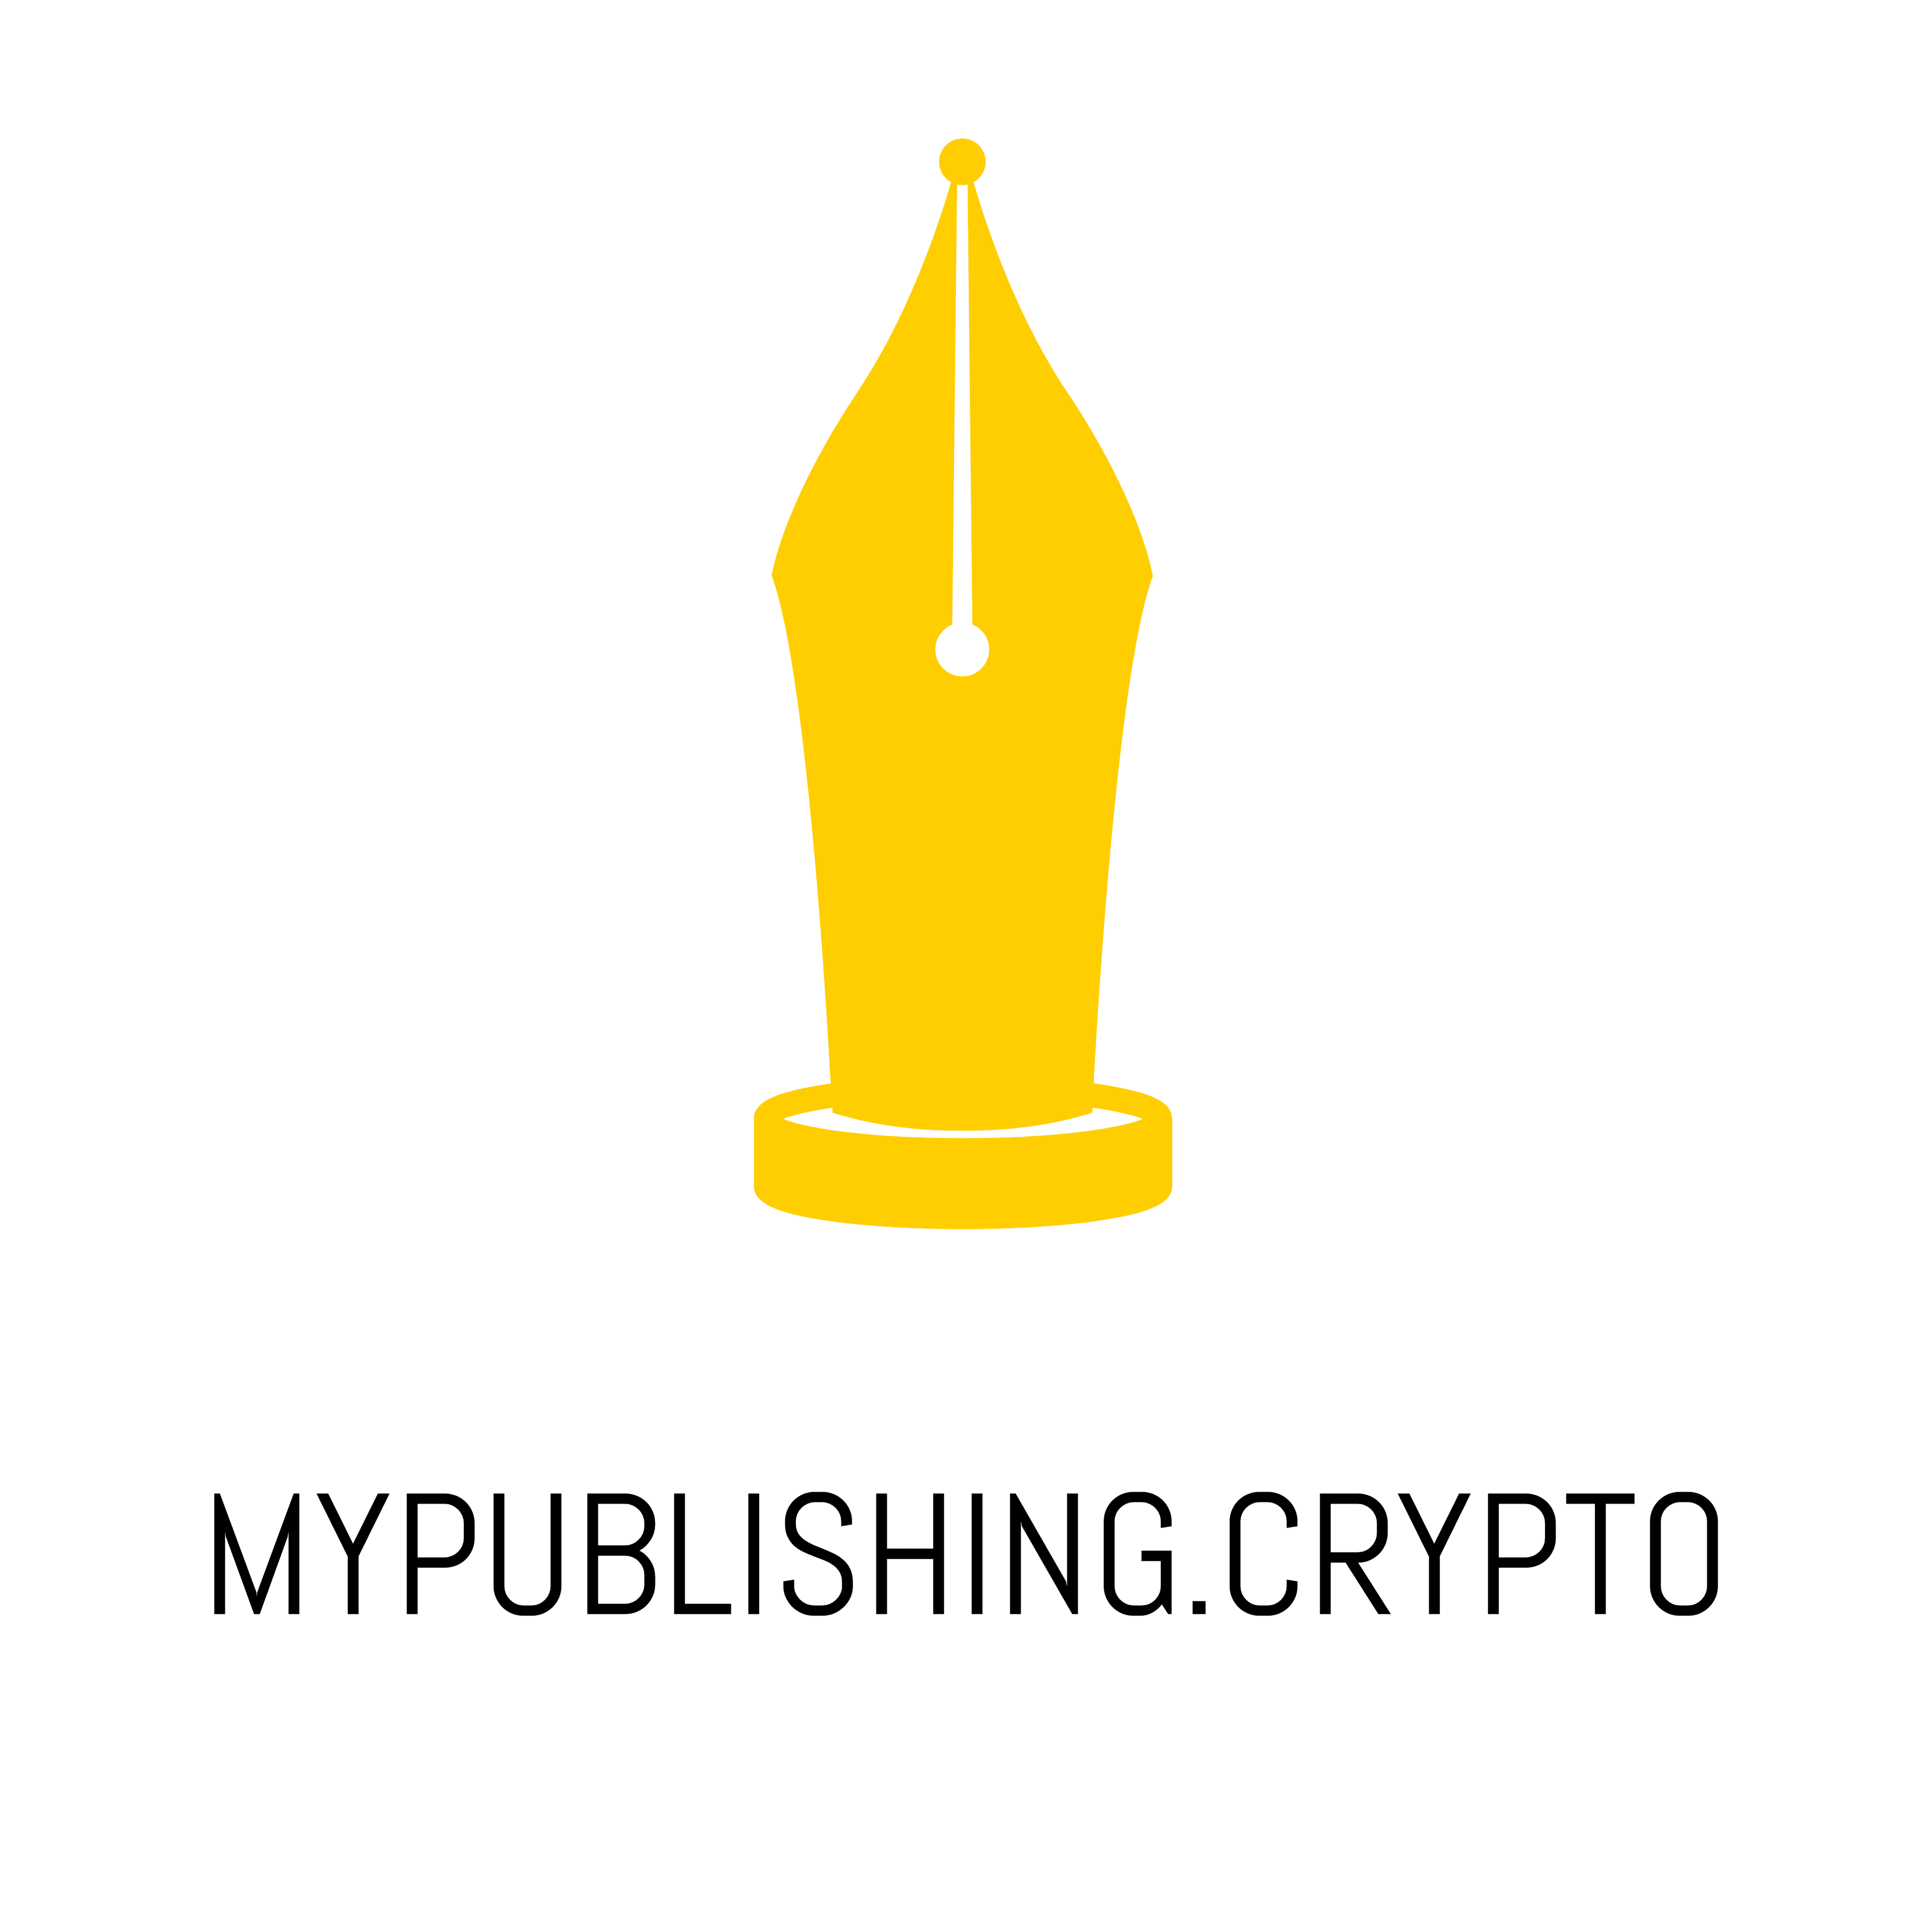 Product MyPublishing.Crypto Ethereum Blockchain Website Web3 - UPLY MEDIA Digital Marketing Company image